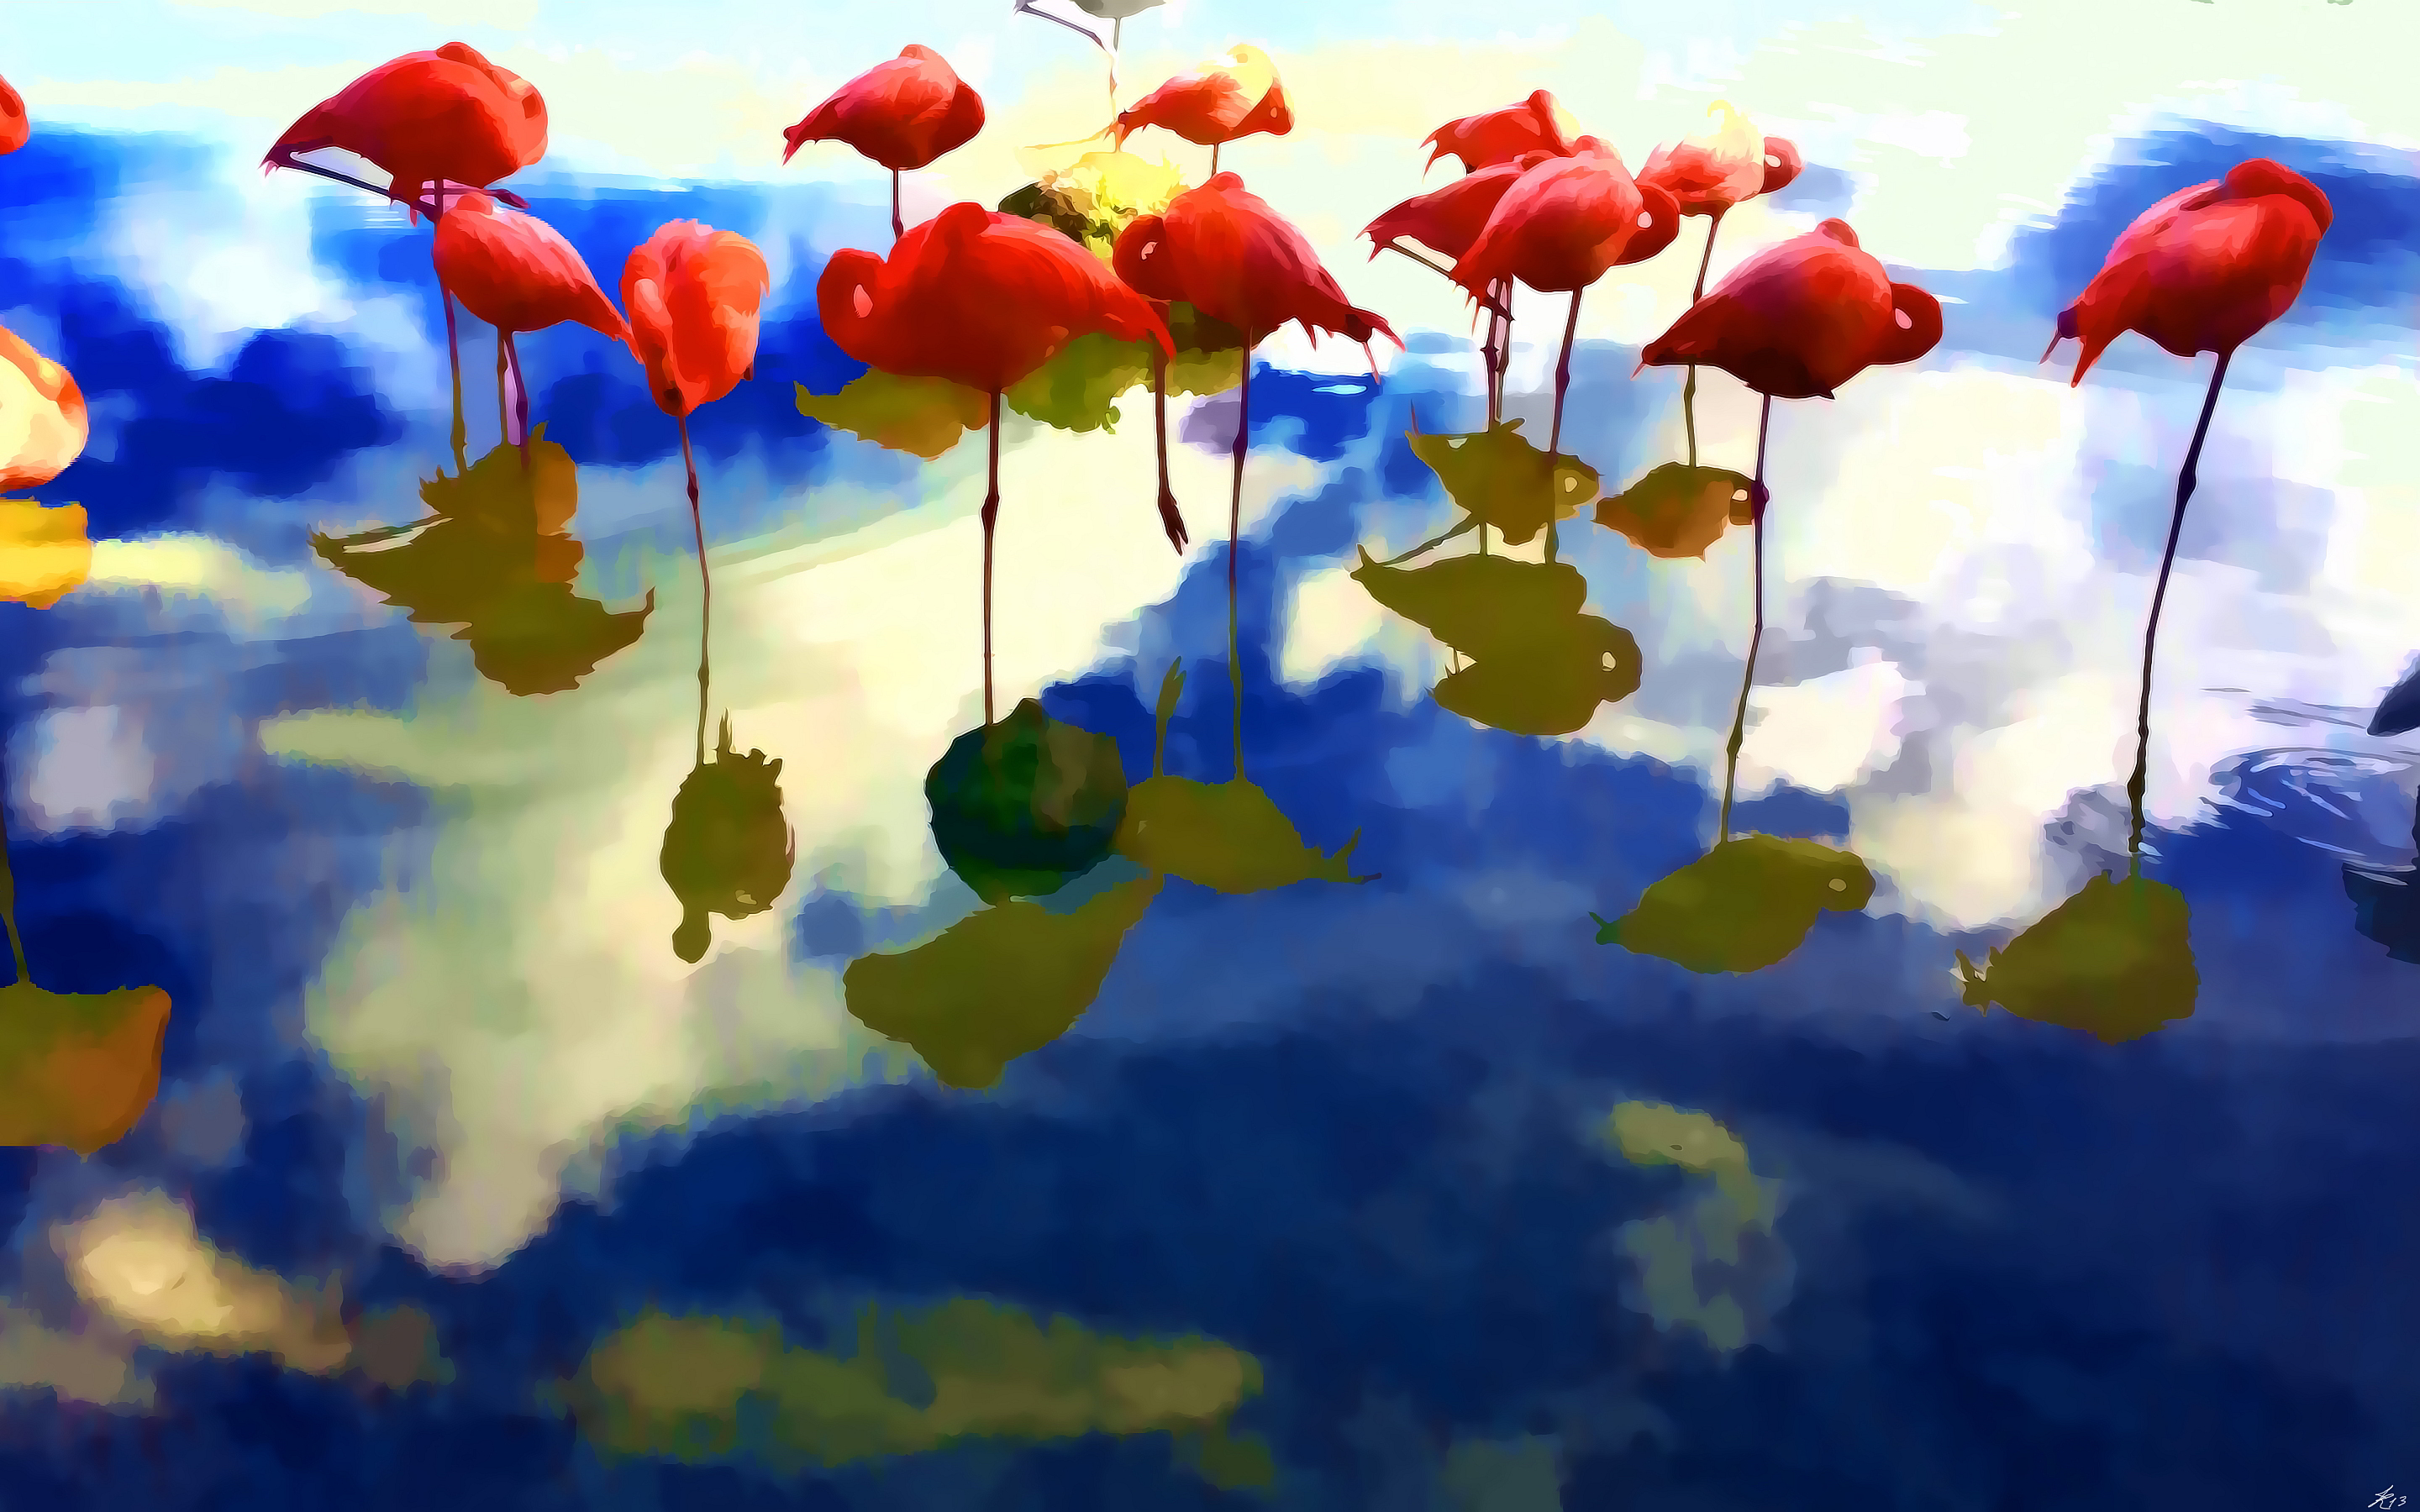 Abstract flamingos art